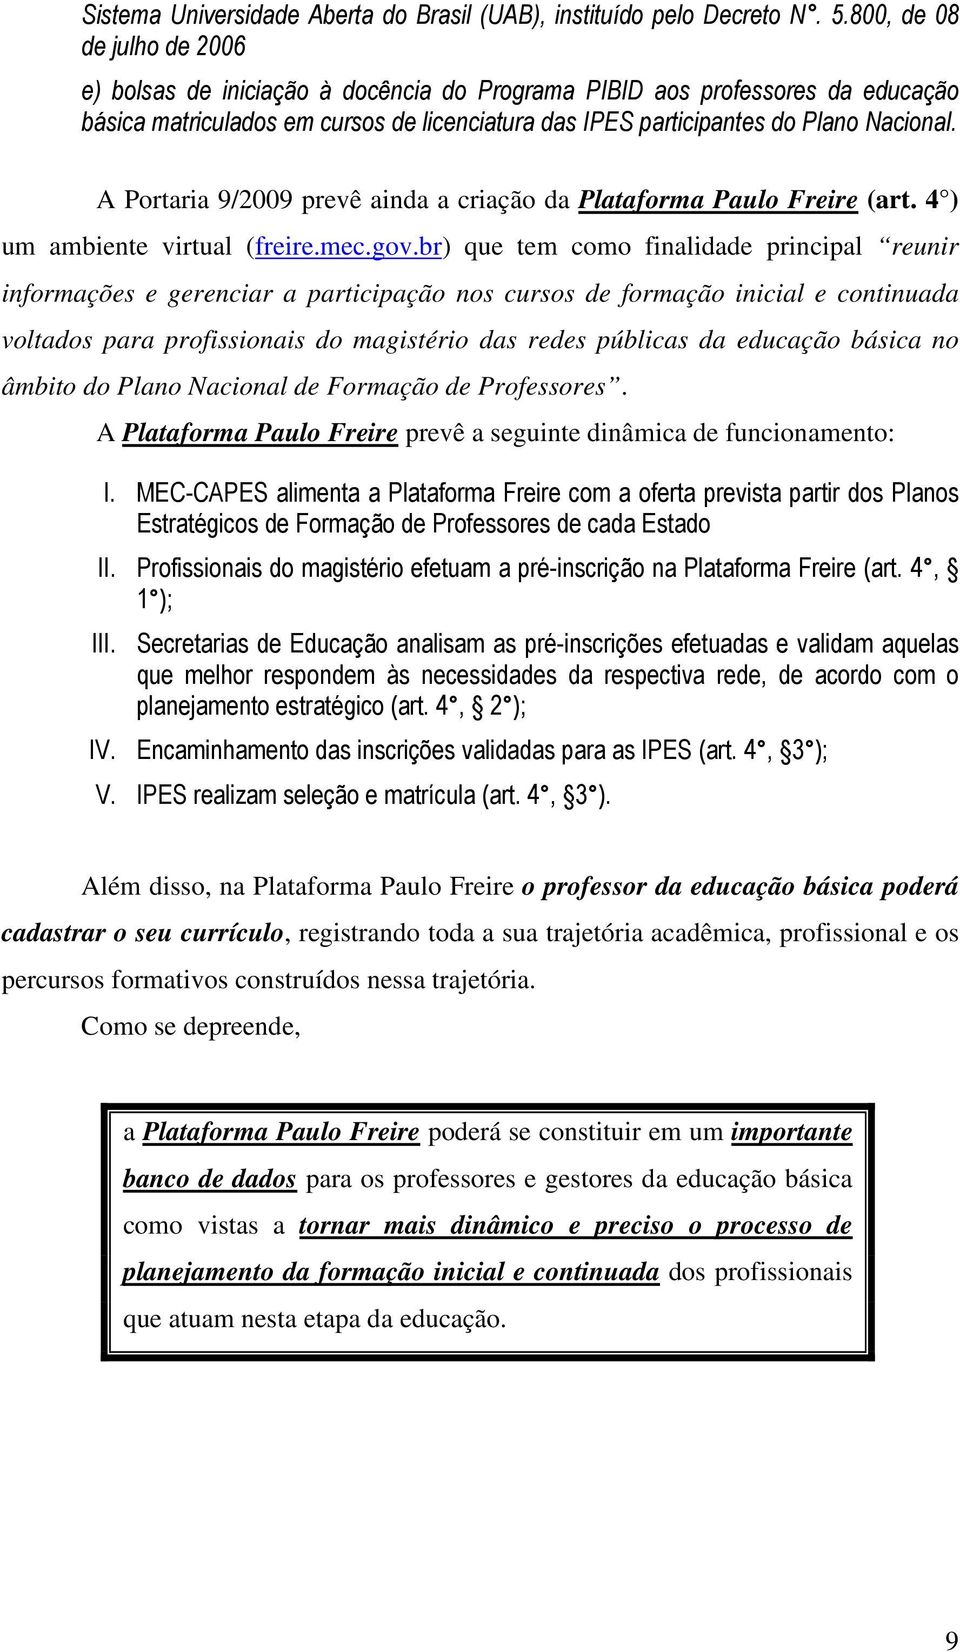 A Portaria 9/2009 prevê ainda a criação da Plataforma Paulo Freire (art. 4 ) um ambiente virtual (freire.mec.gov.